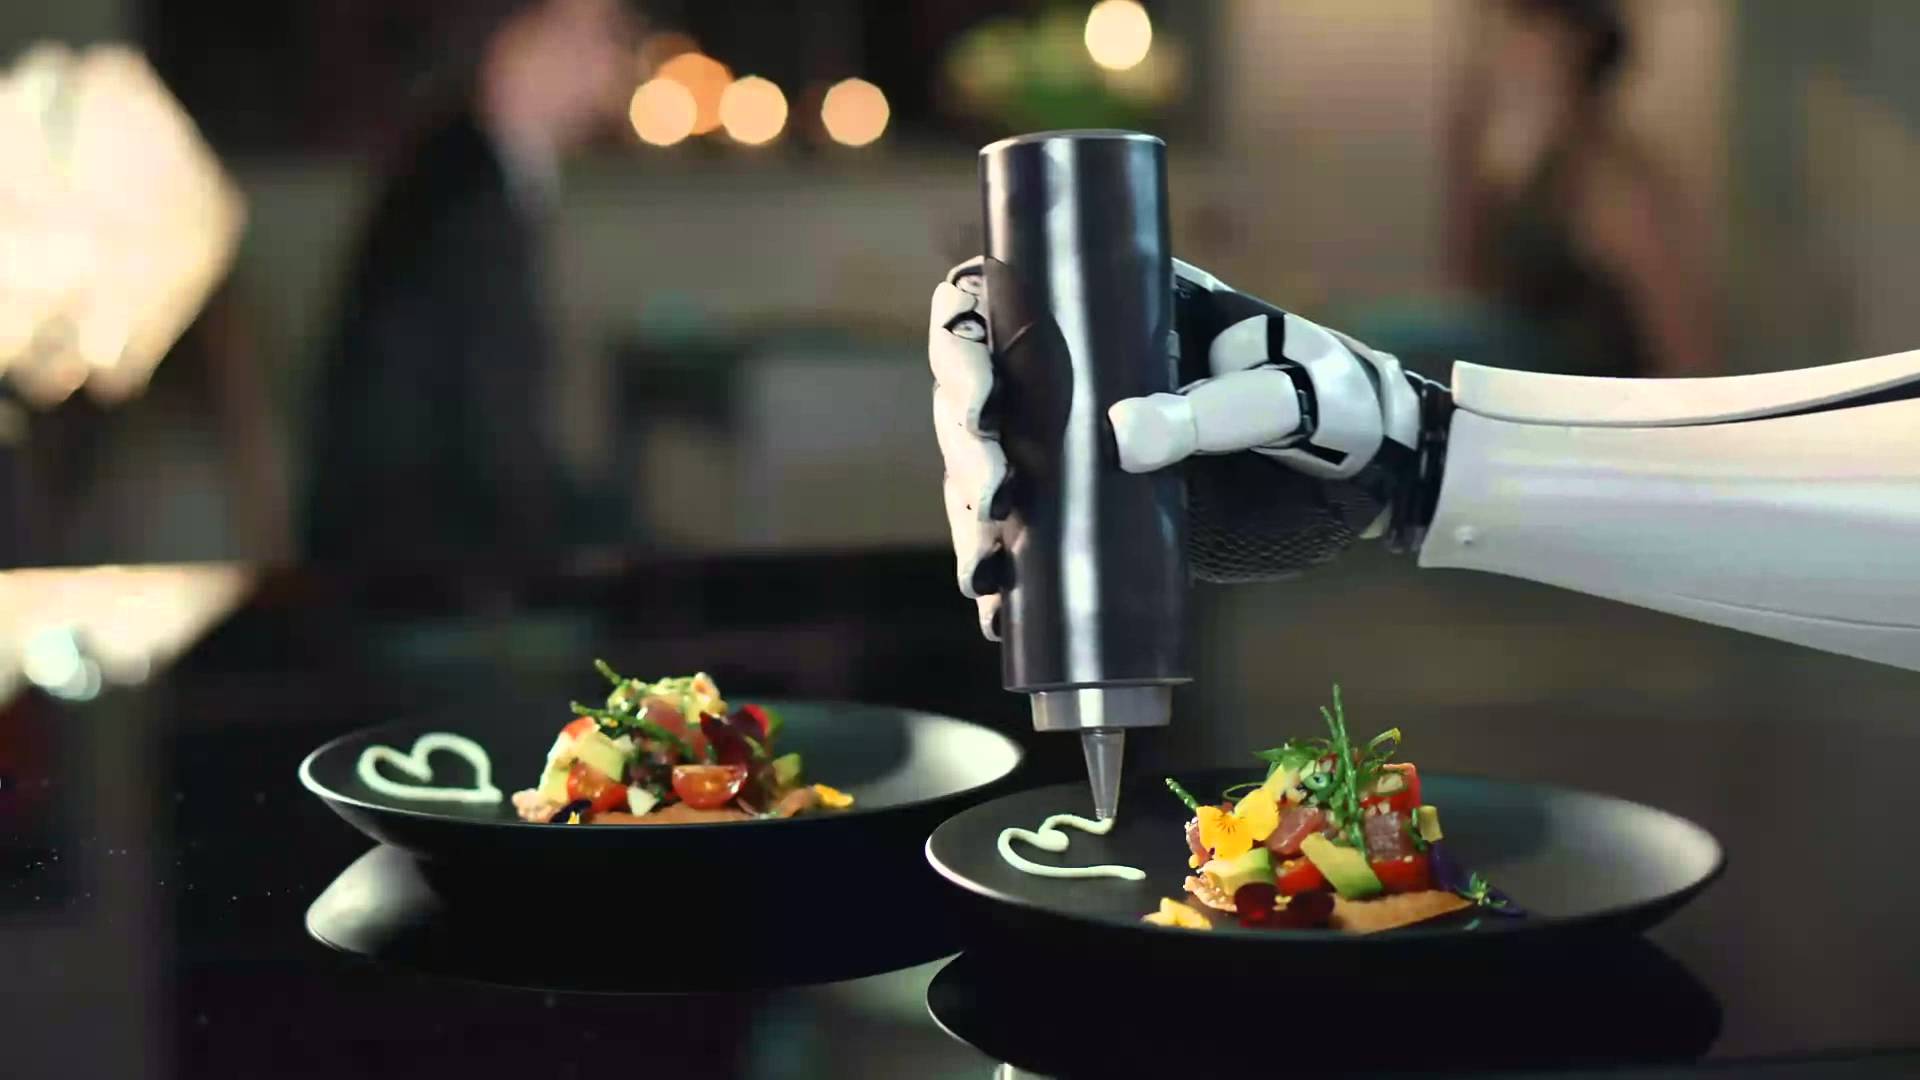 Robot Preparing Food In The Kitchen 2160w 